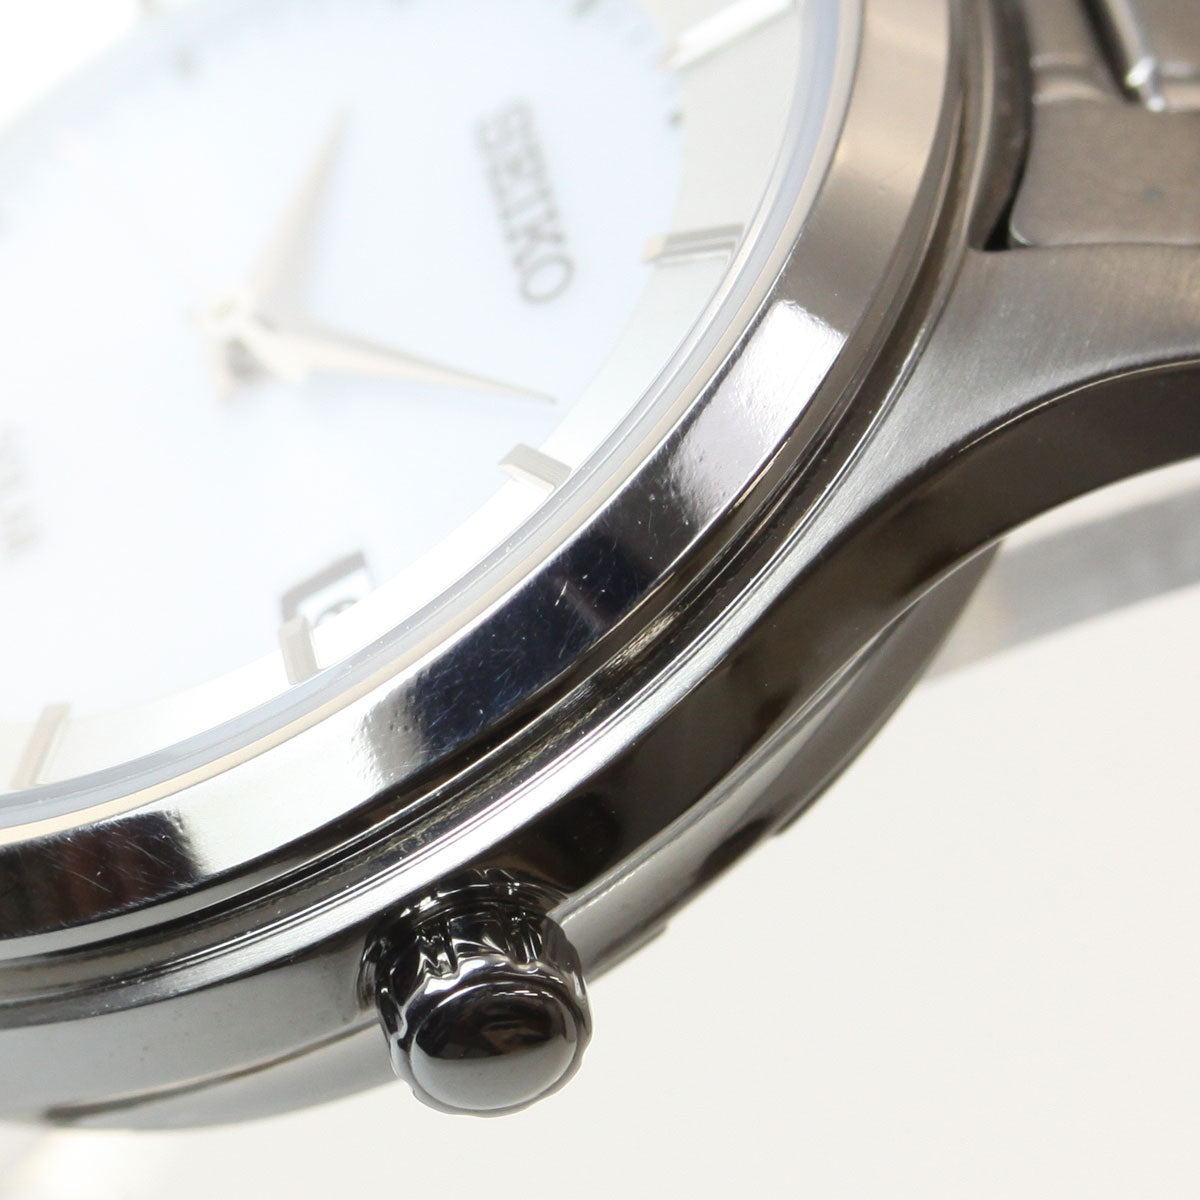 セイコー セレクション SEIKO SELECTION ソーラー 腕時計 メンズ レディース ペアモデル SBPX101 STPX041